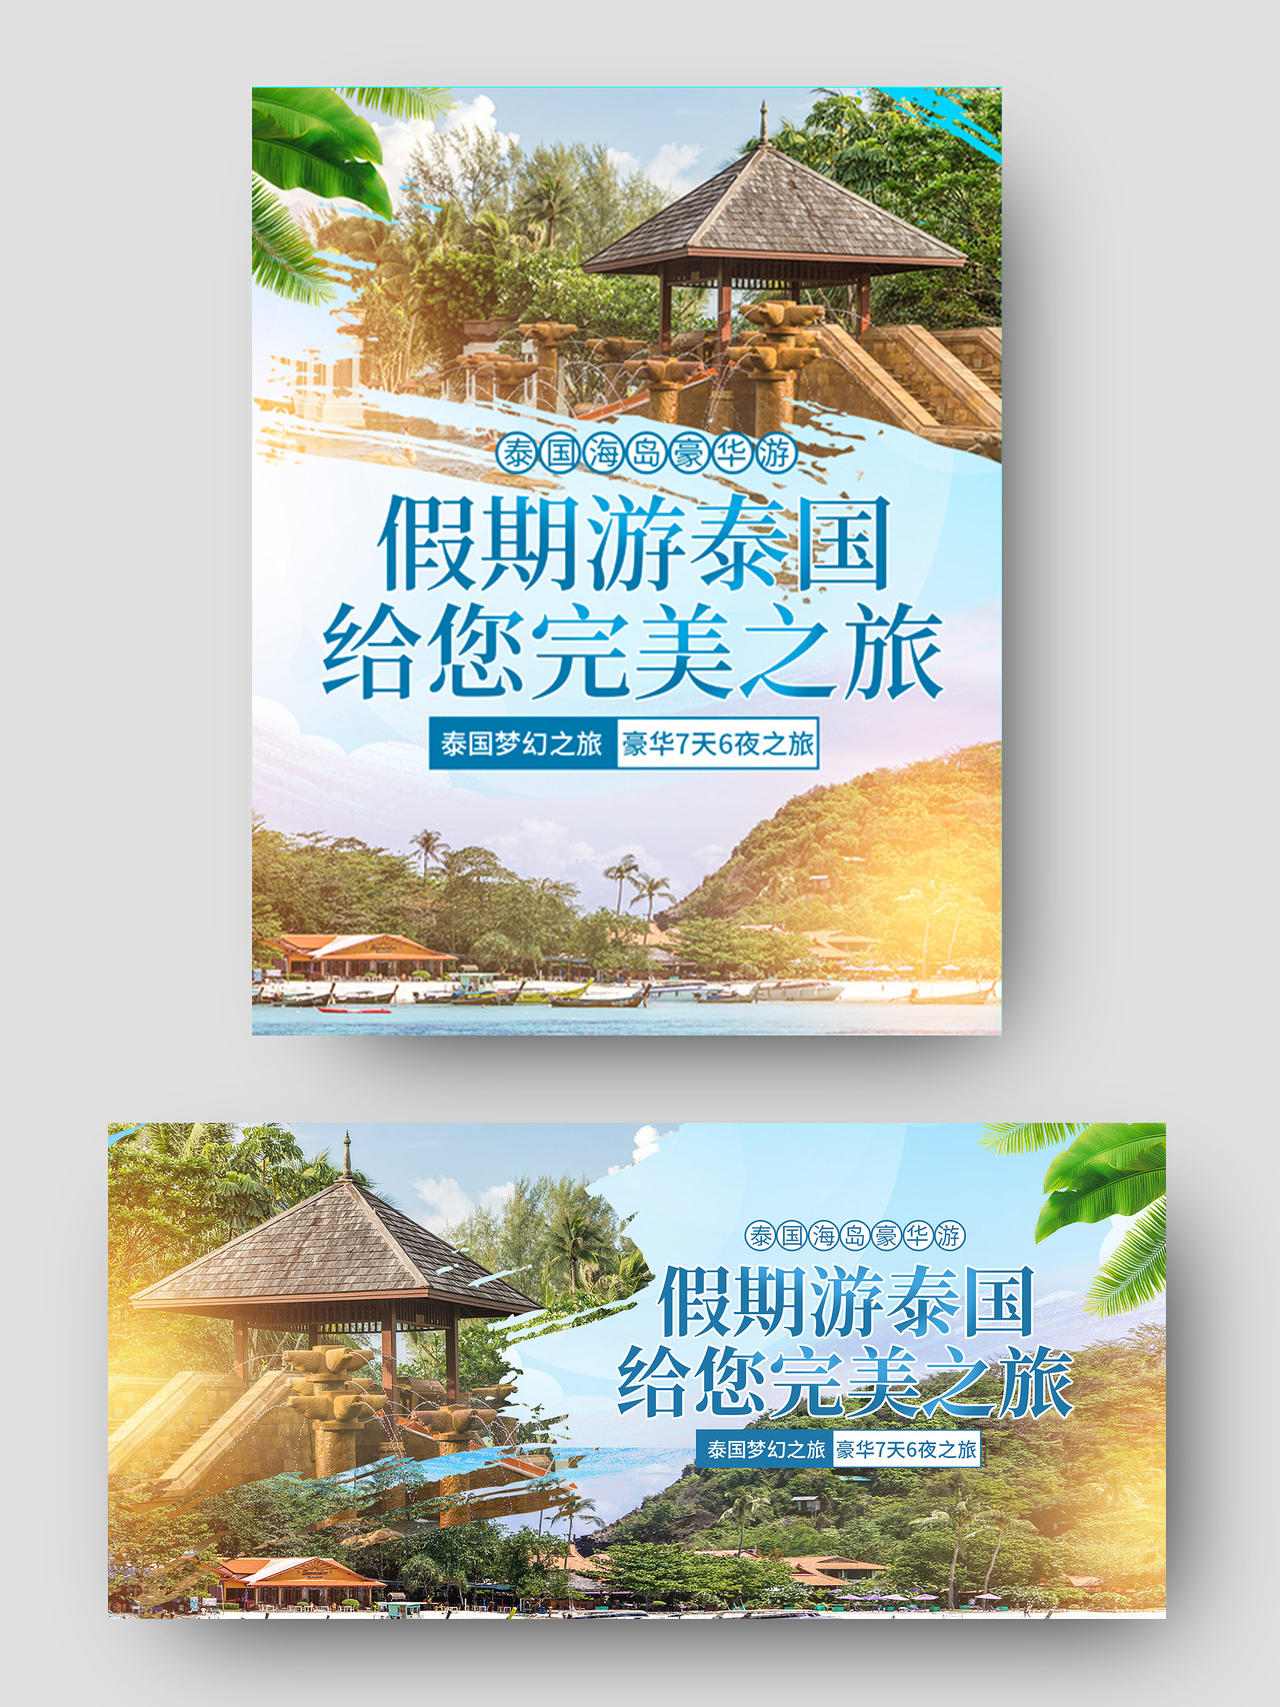 绿色小清新假期游泰国给您完美之旅旅游海报